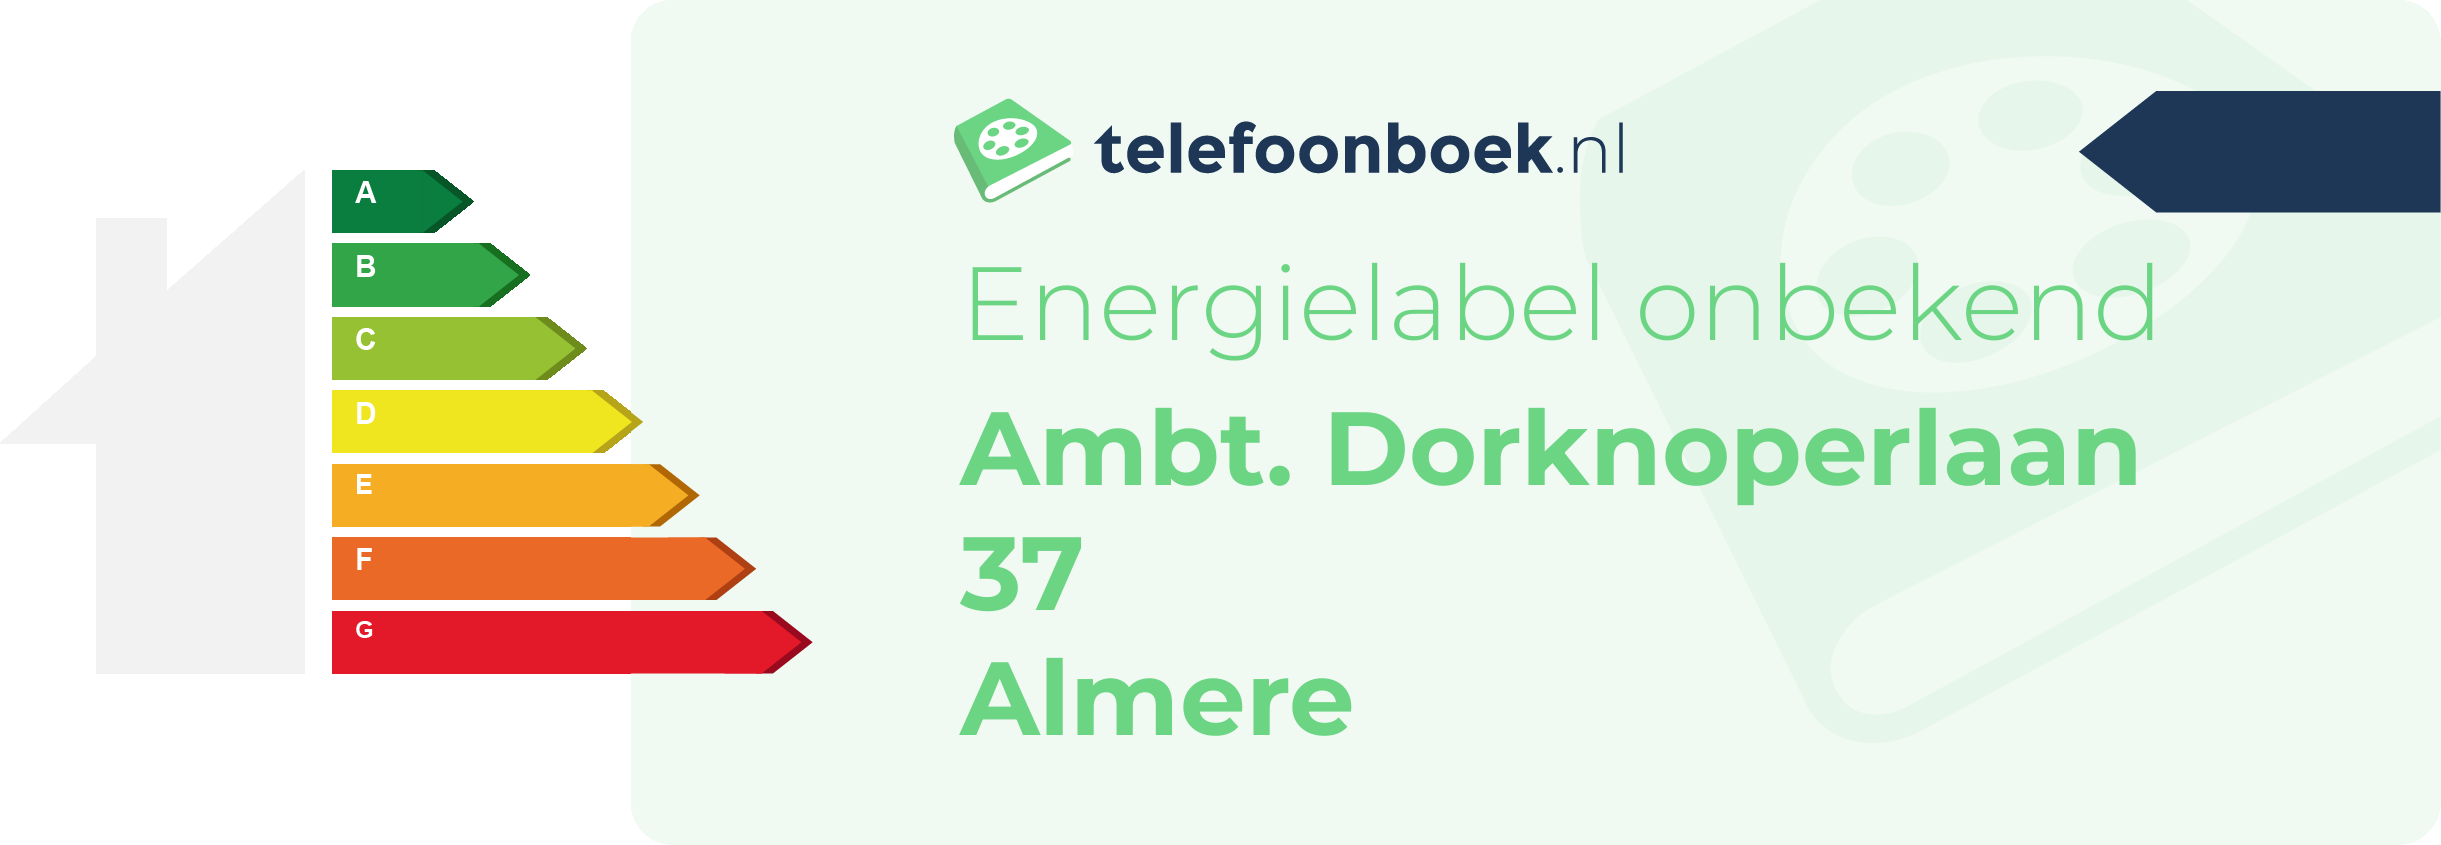 Energielabel Ambt. Dorknoperlaan 37 Almere